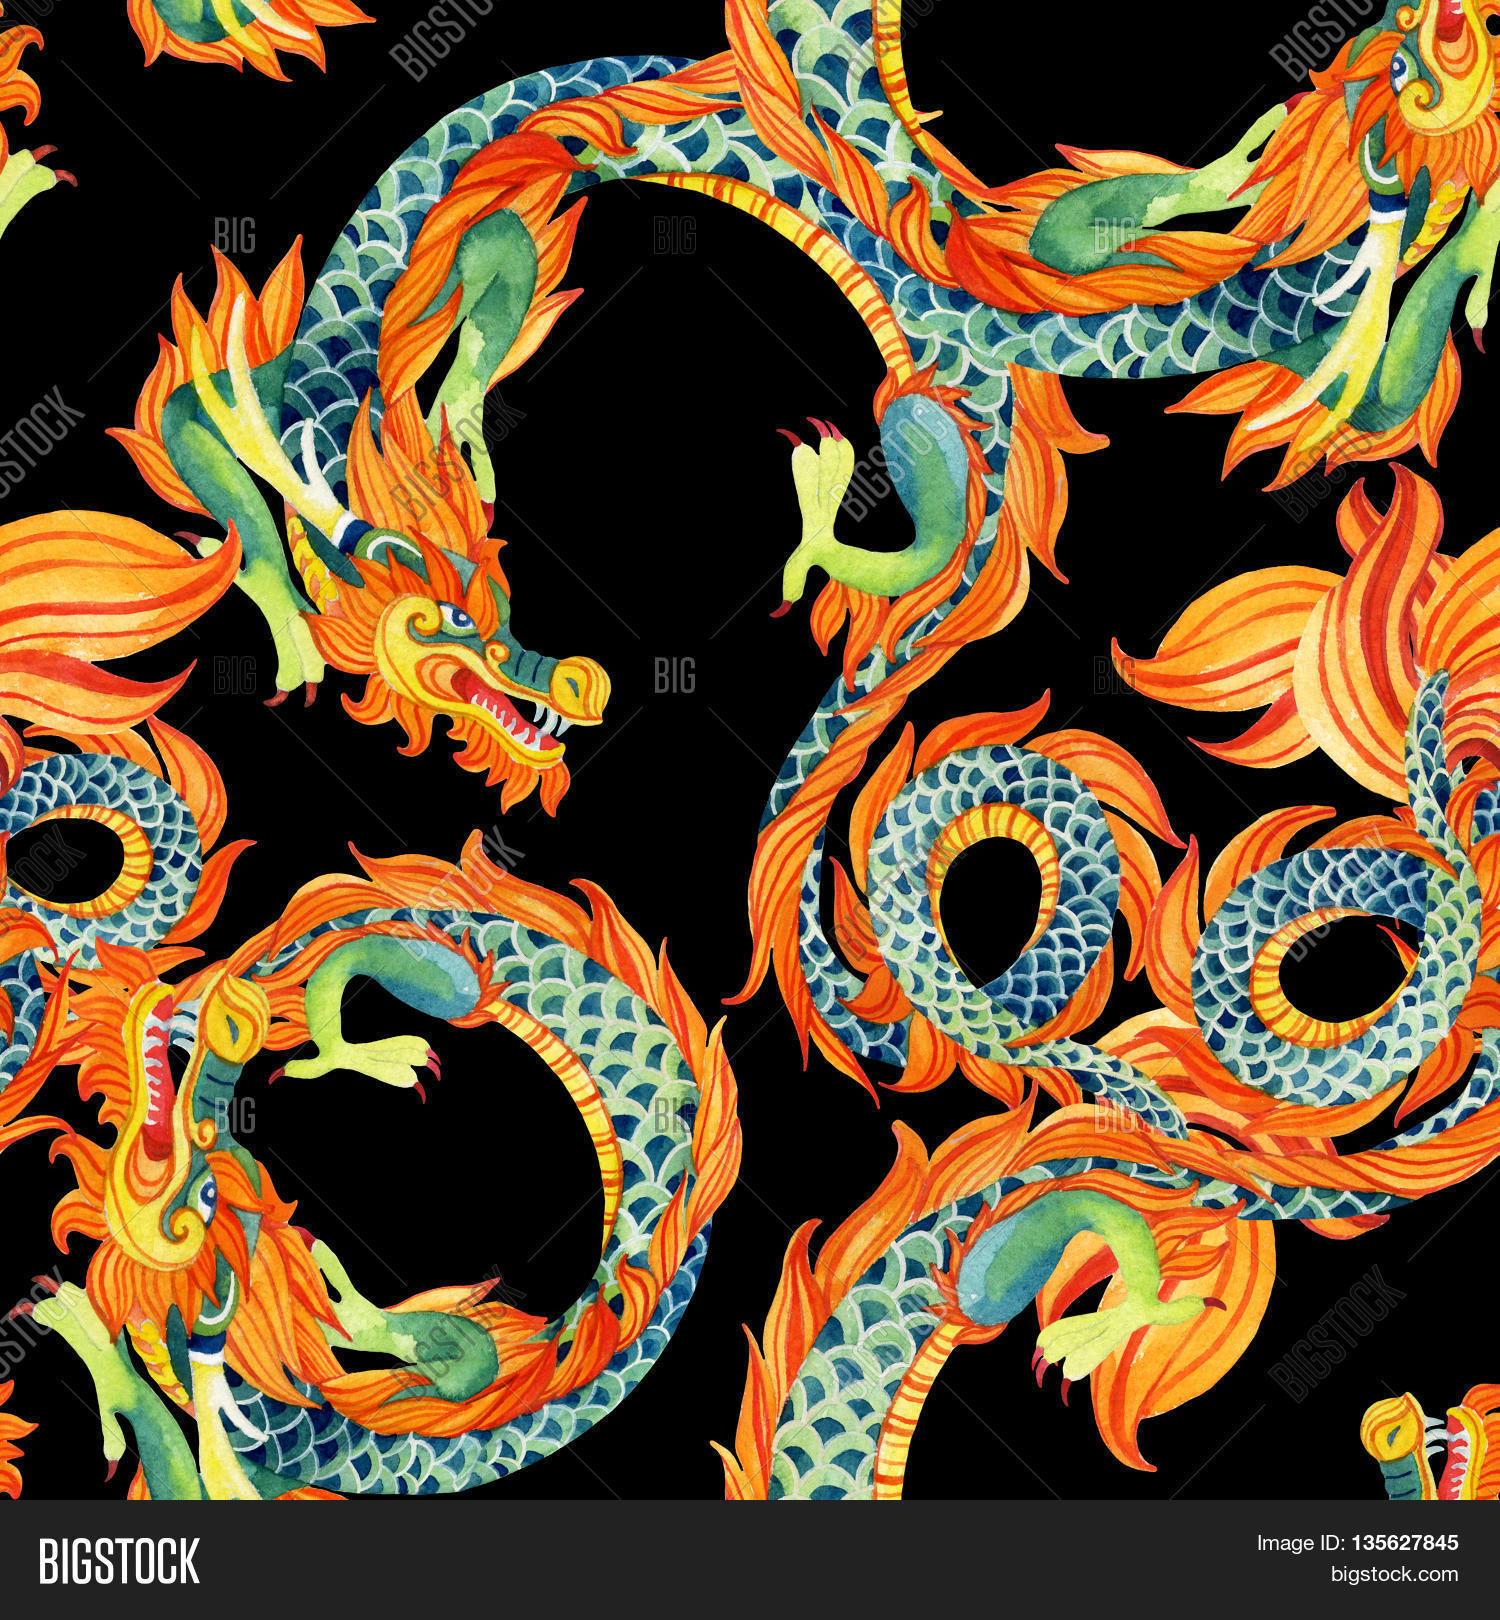 Chinese Dragon Seamless Pattern. Image & Photo | Bigstock